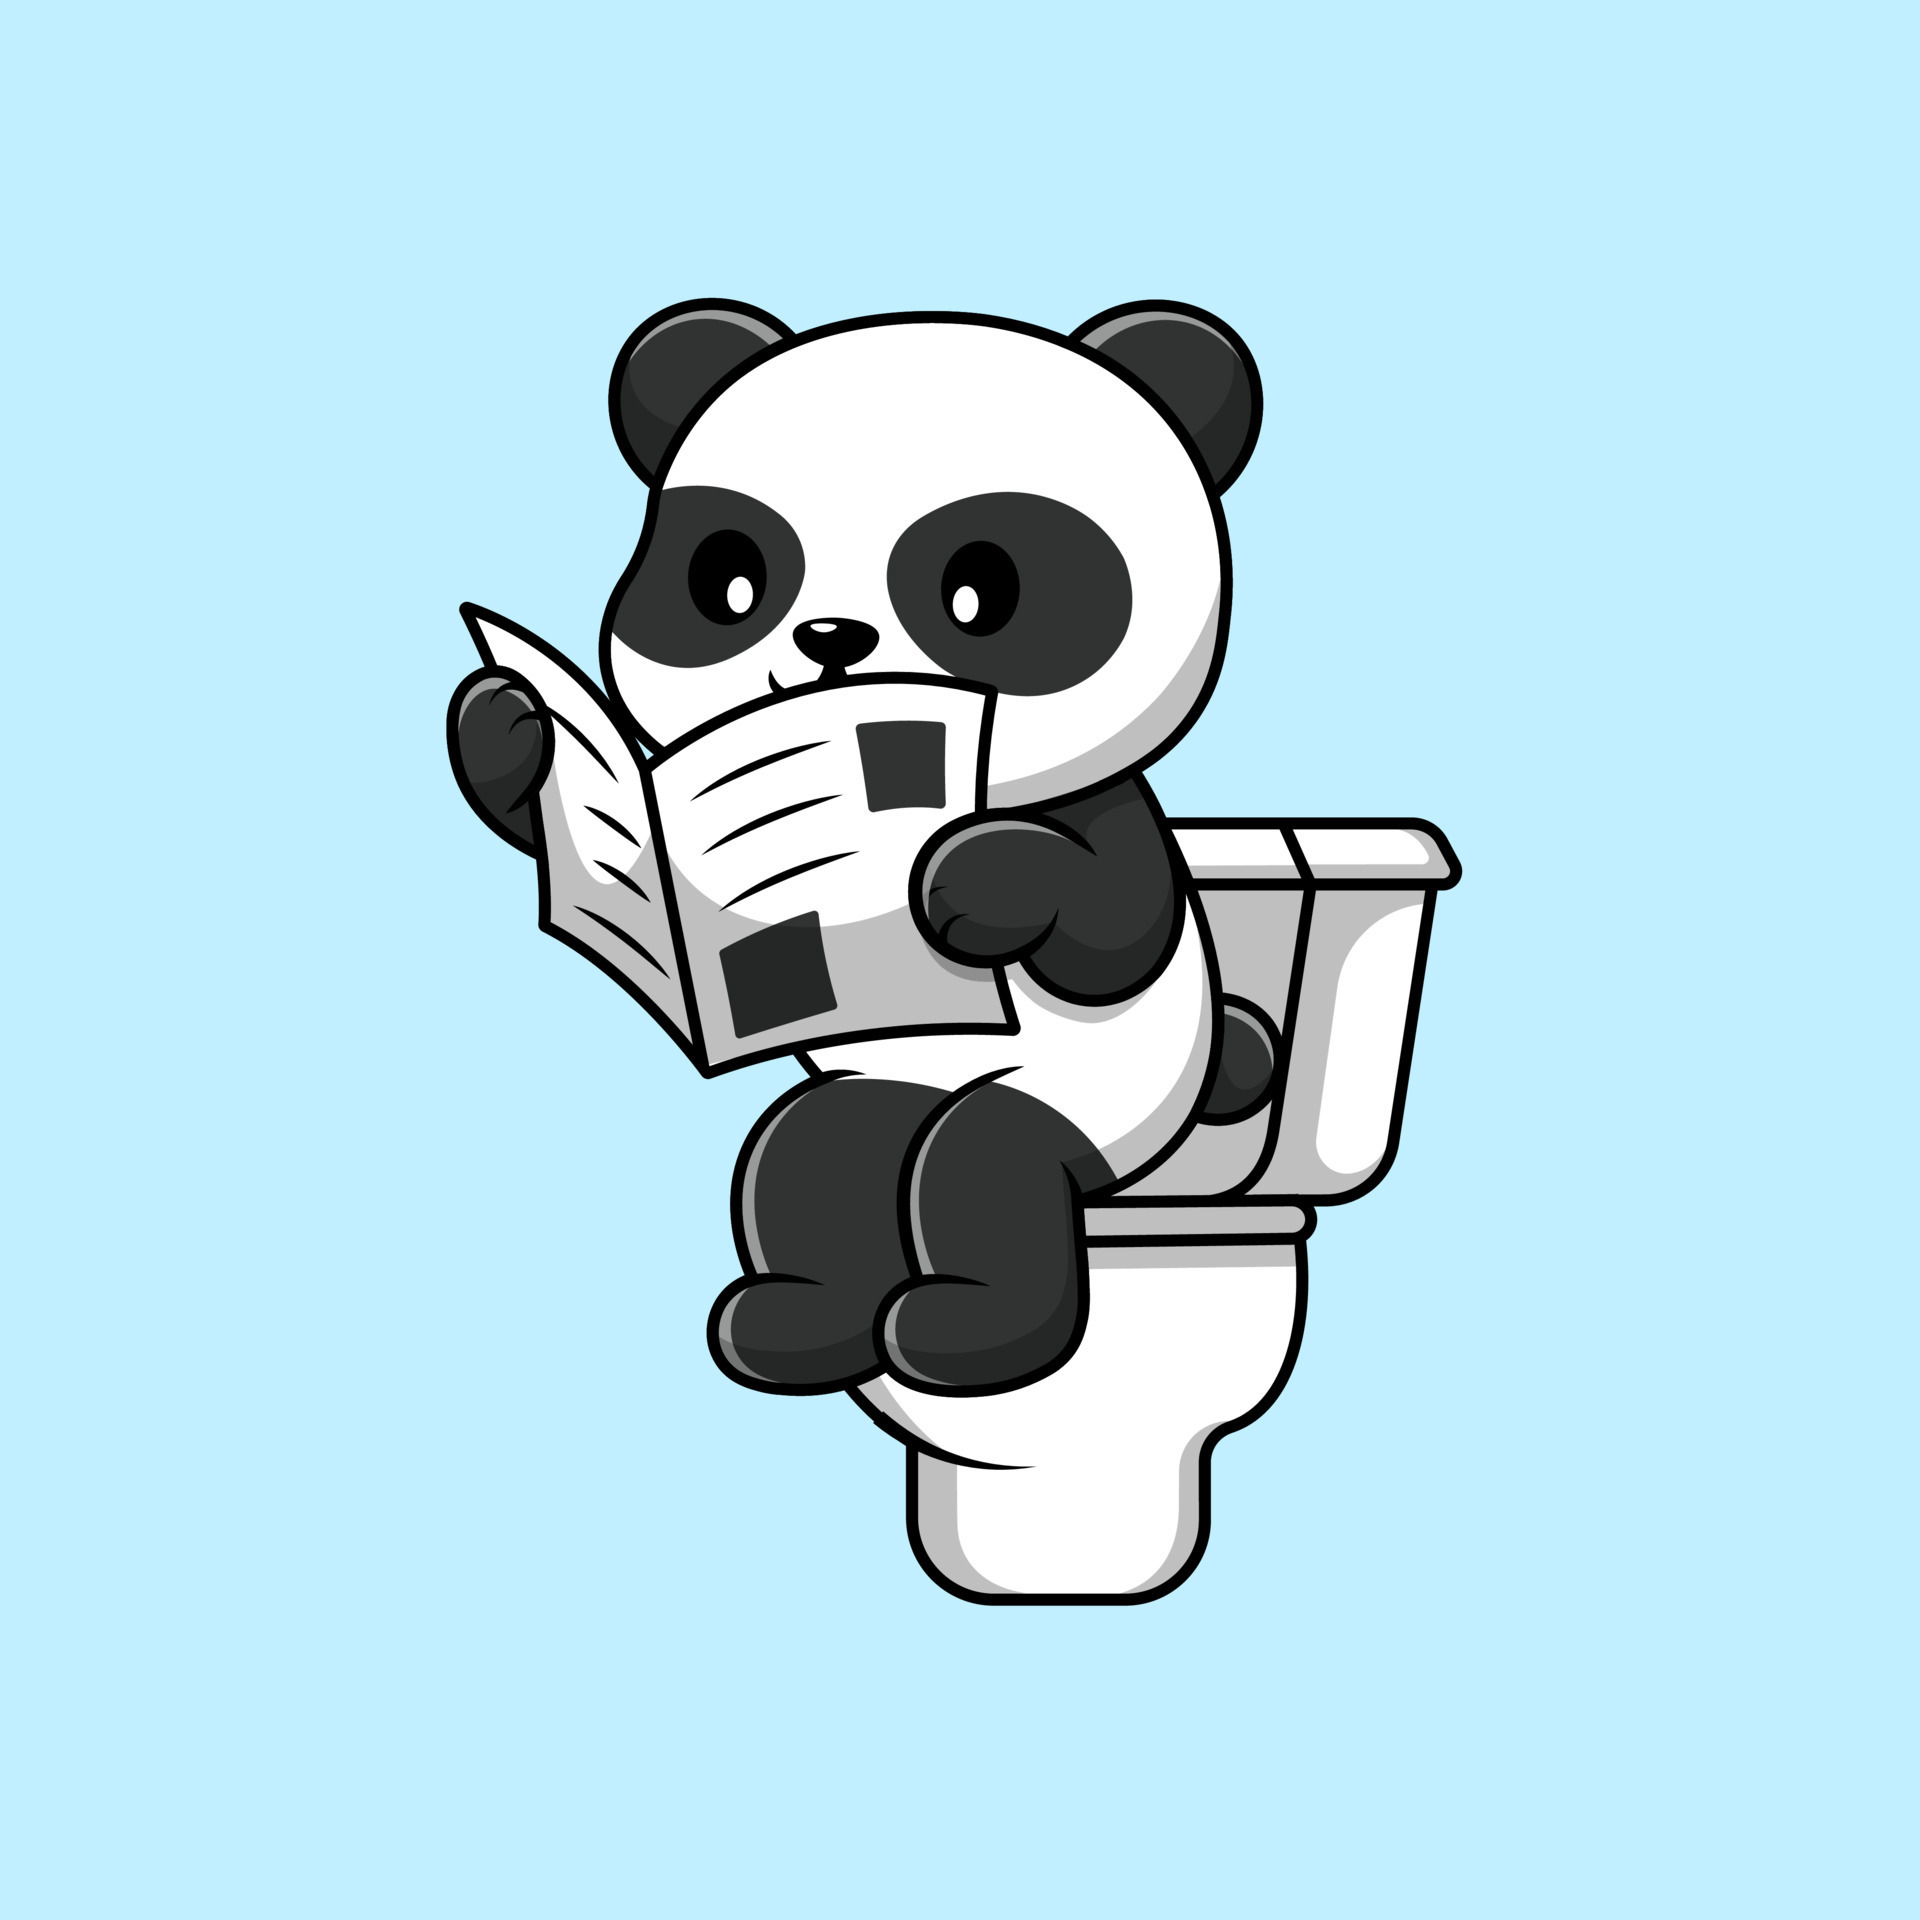 Panda bonito dos desenhos animados do cartão da ilustração com